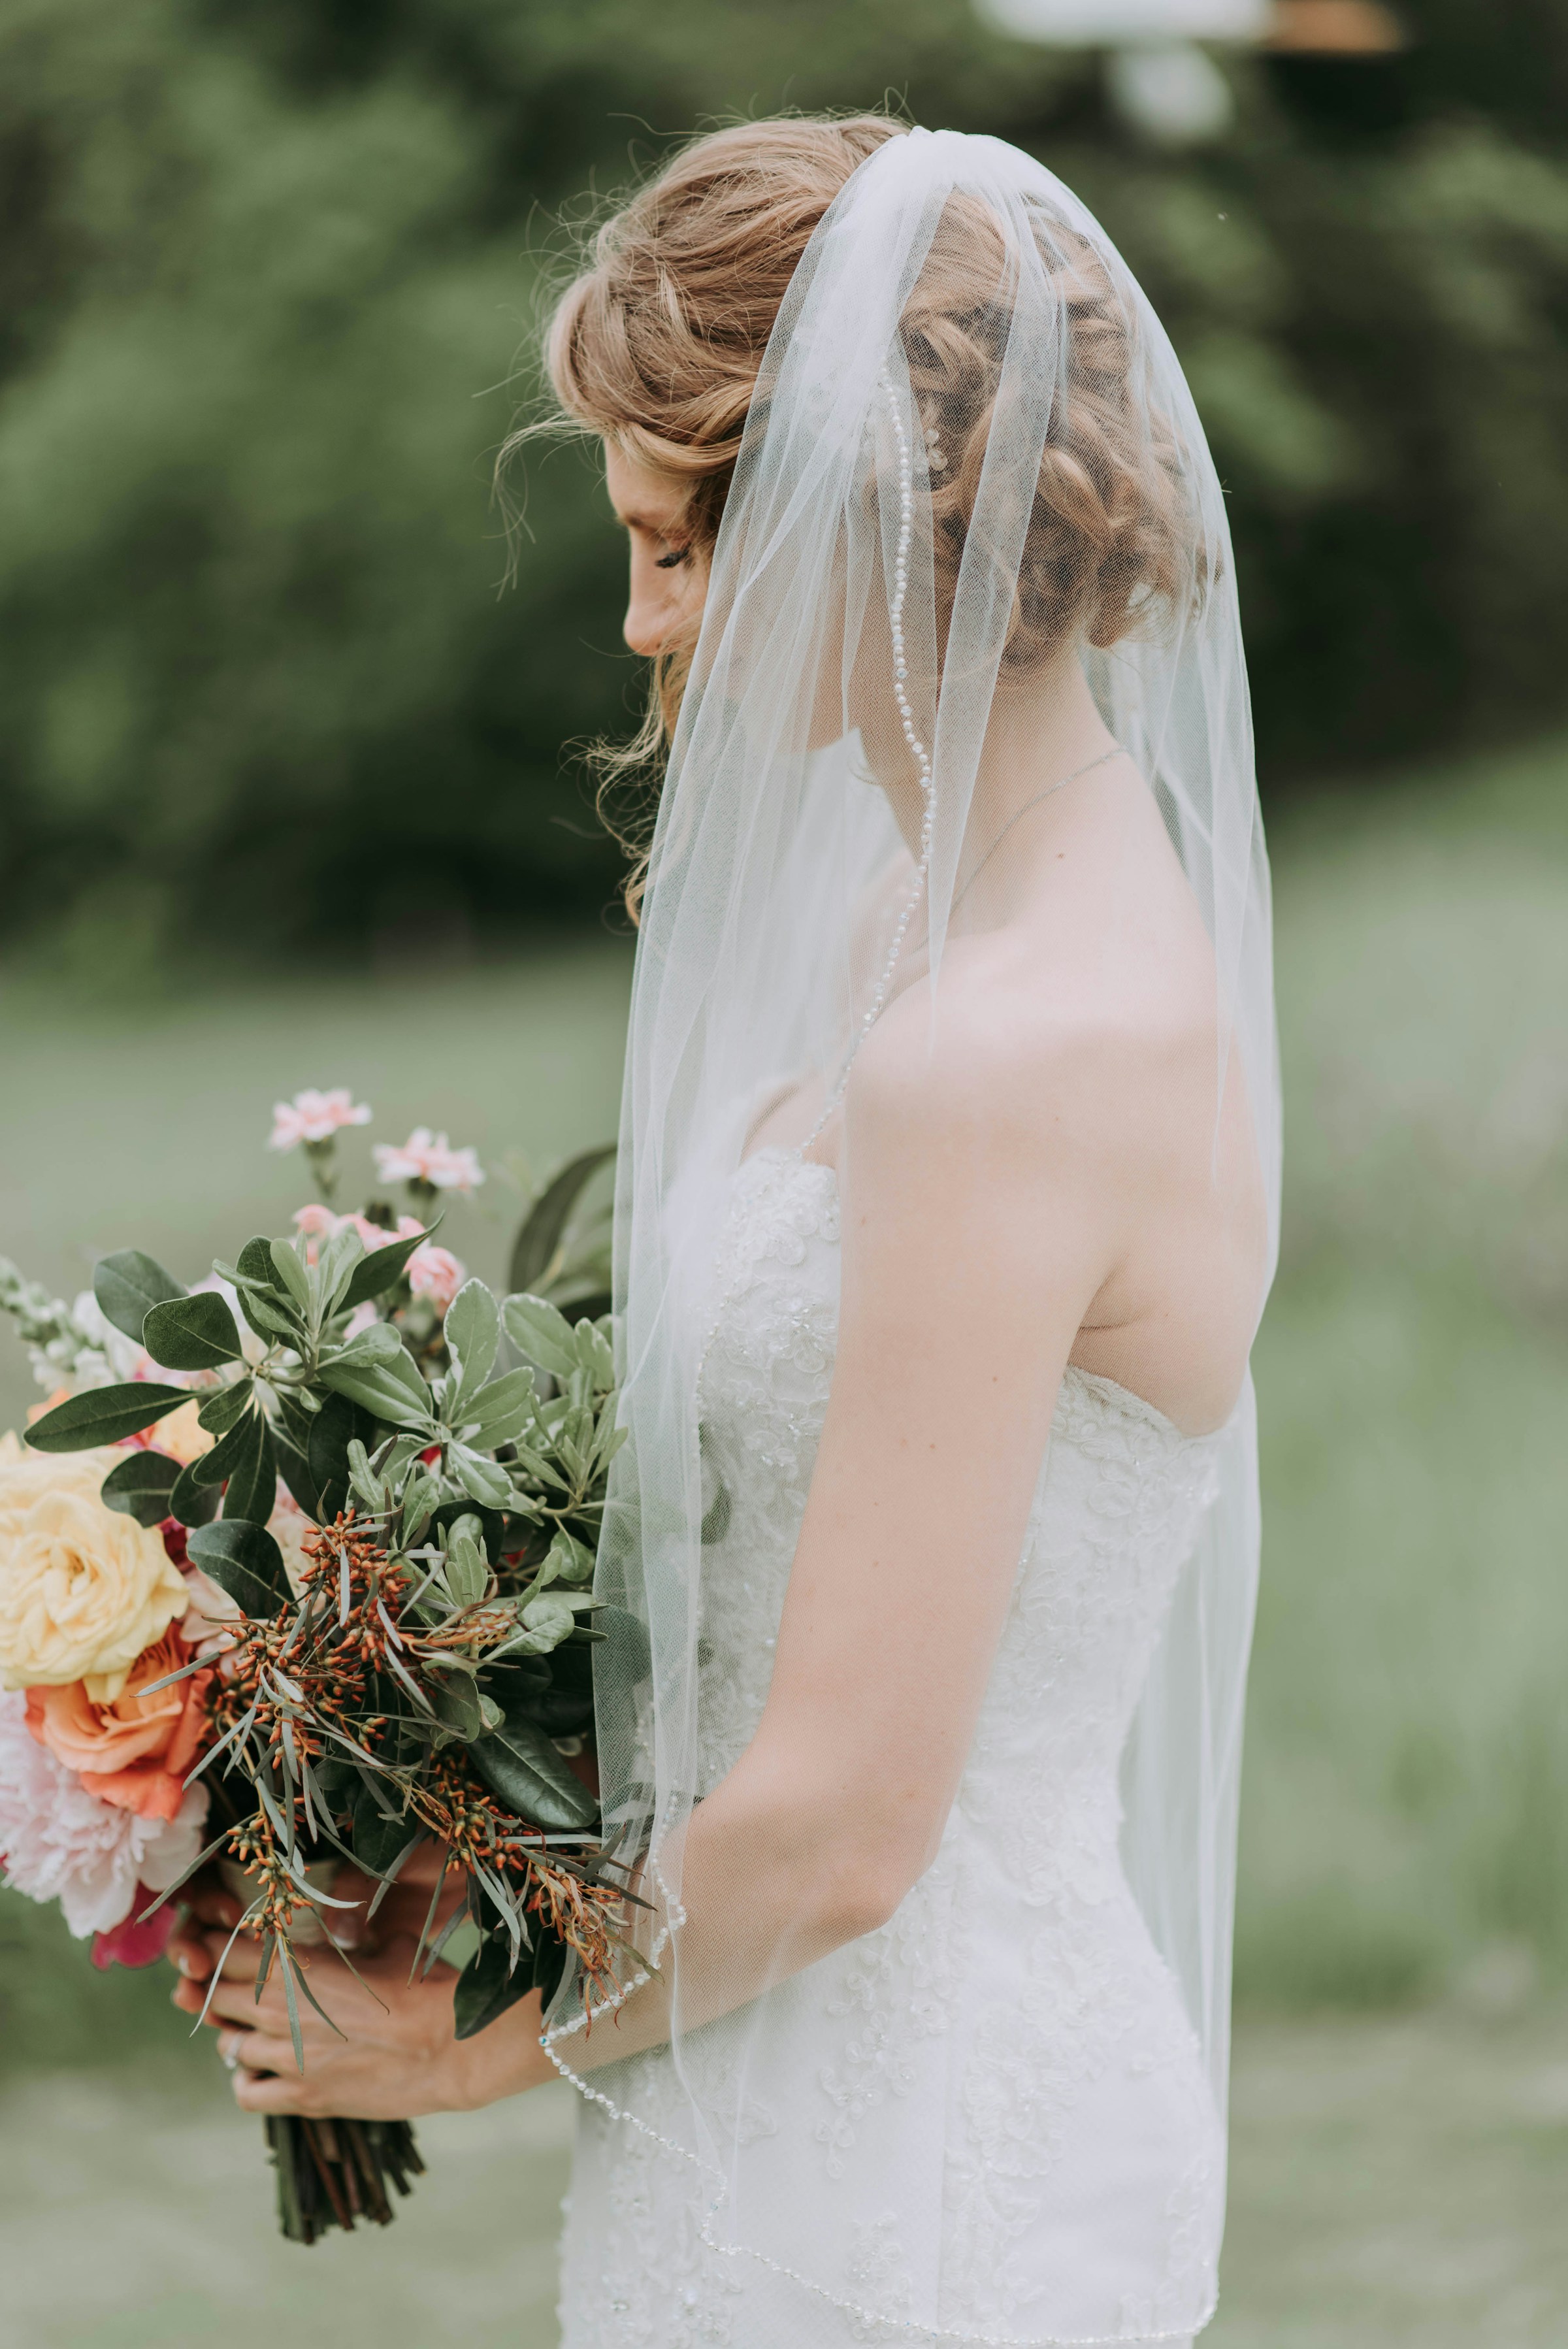 Eine Braut hält einen Blumenstrauß | Quelle: Unsplash